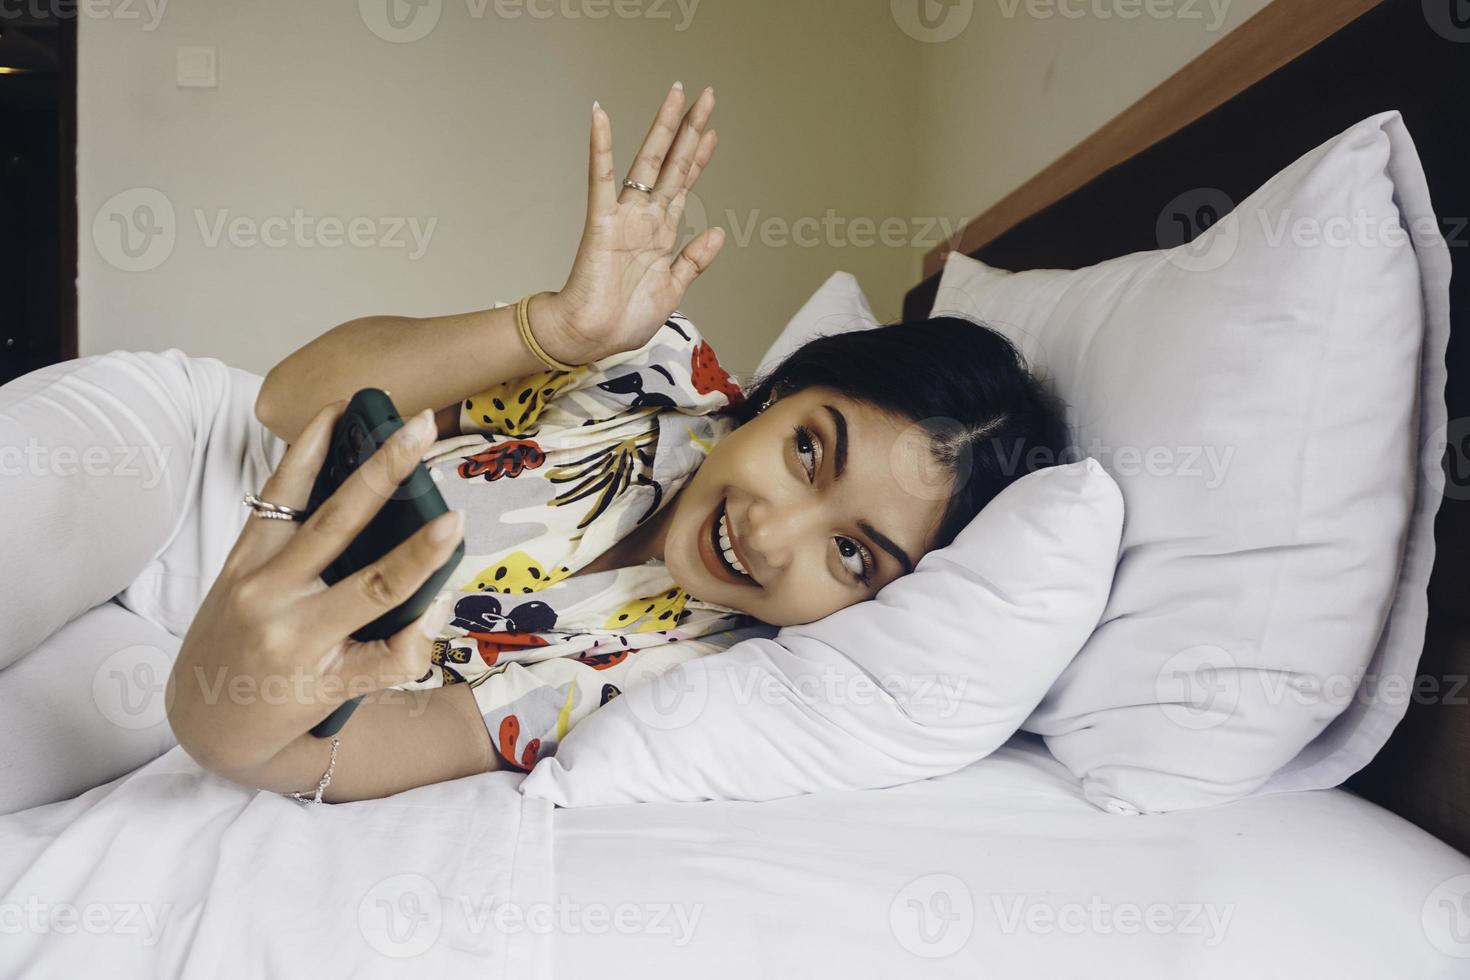 excitée joyeuse jeune femme asiatique faisant un appel vidéo ou un selfie tourné sur un téléphone portable en agitant la salutation en position couchée sur le lit photo